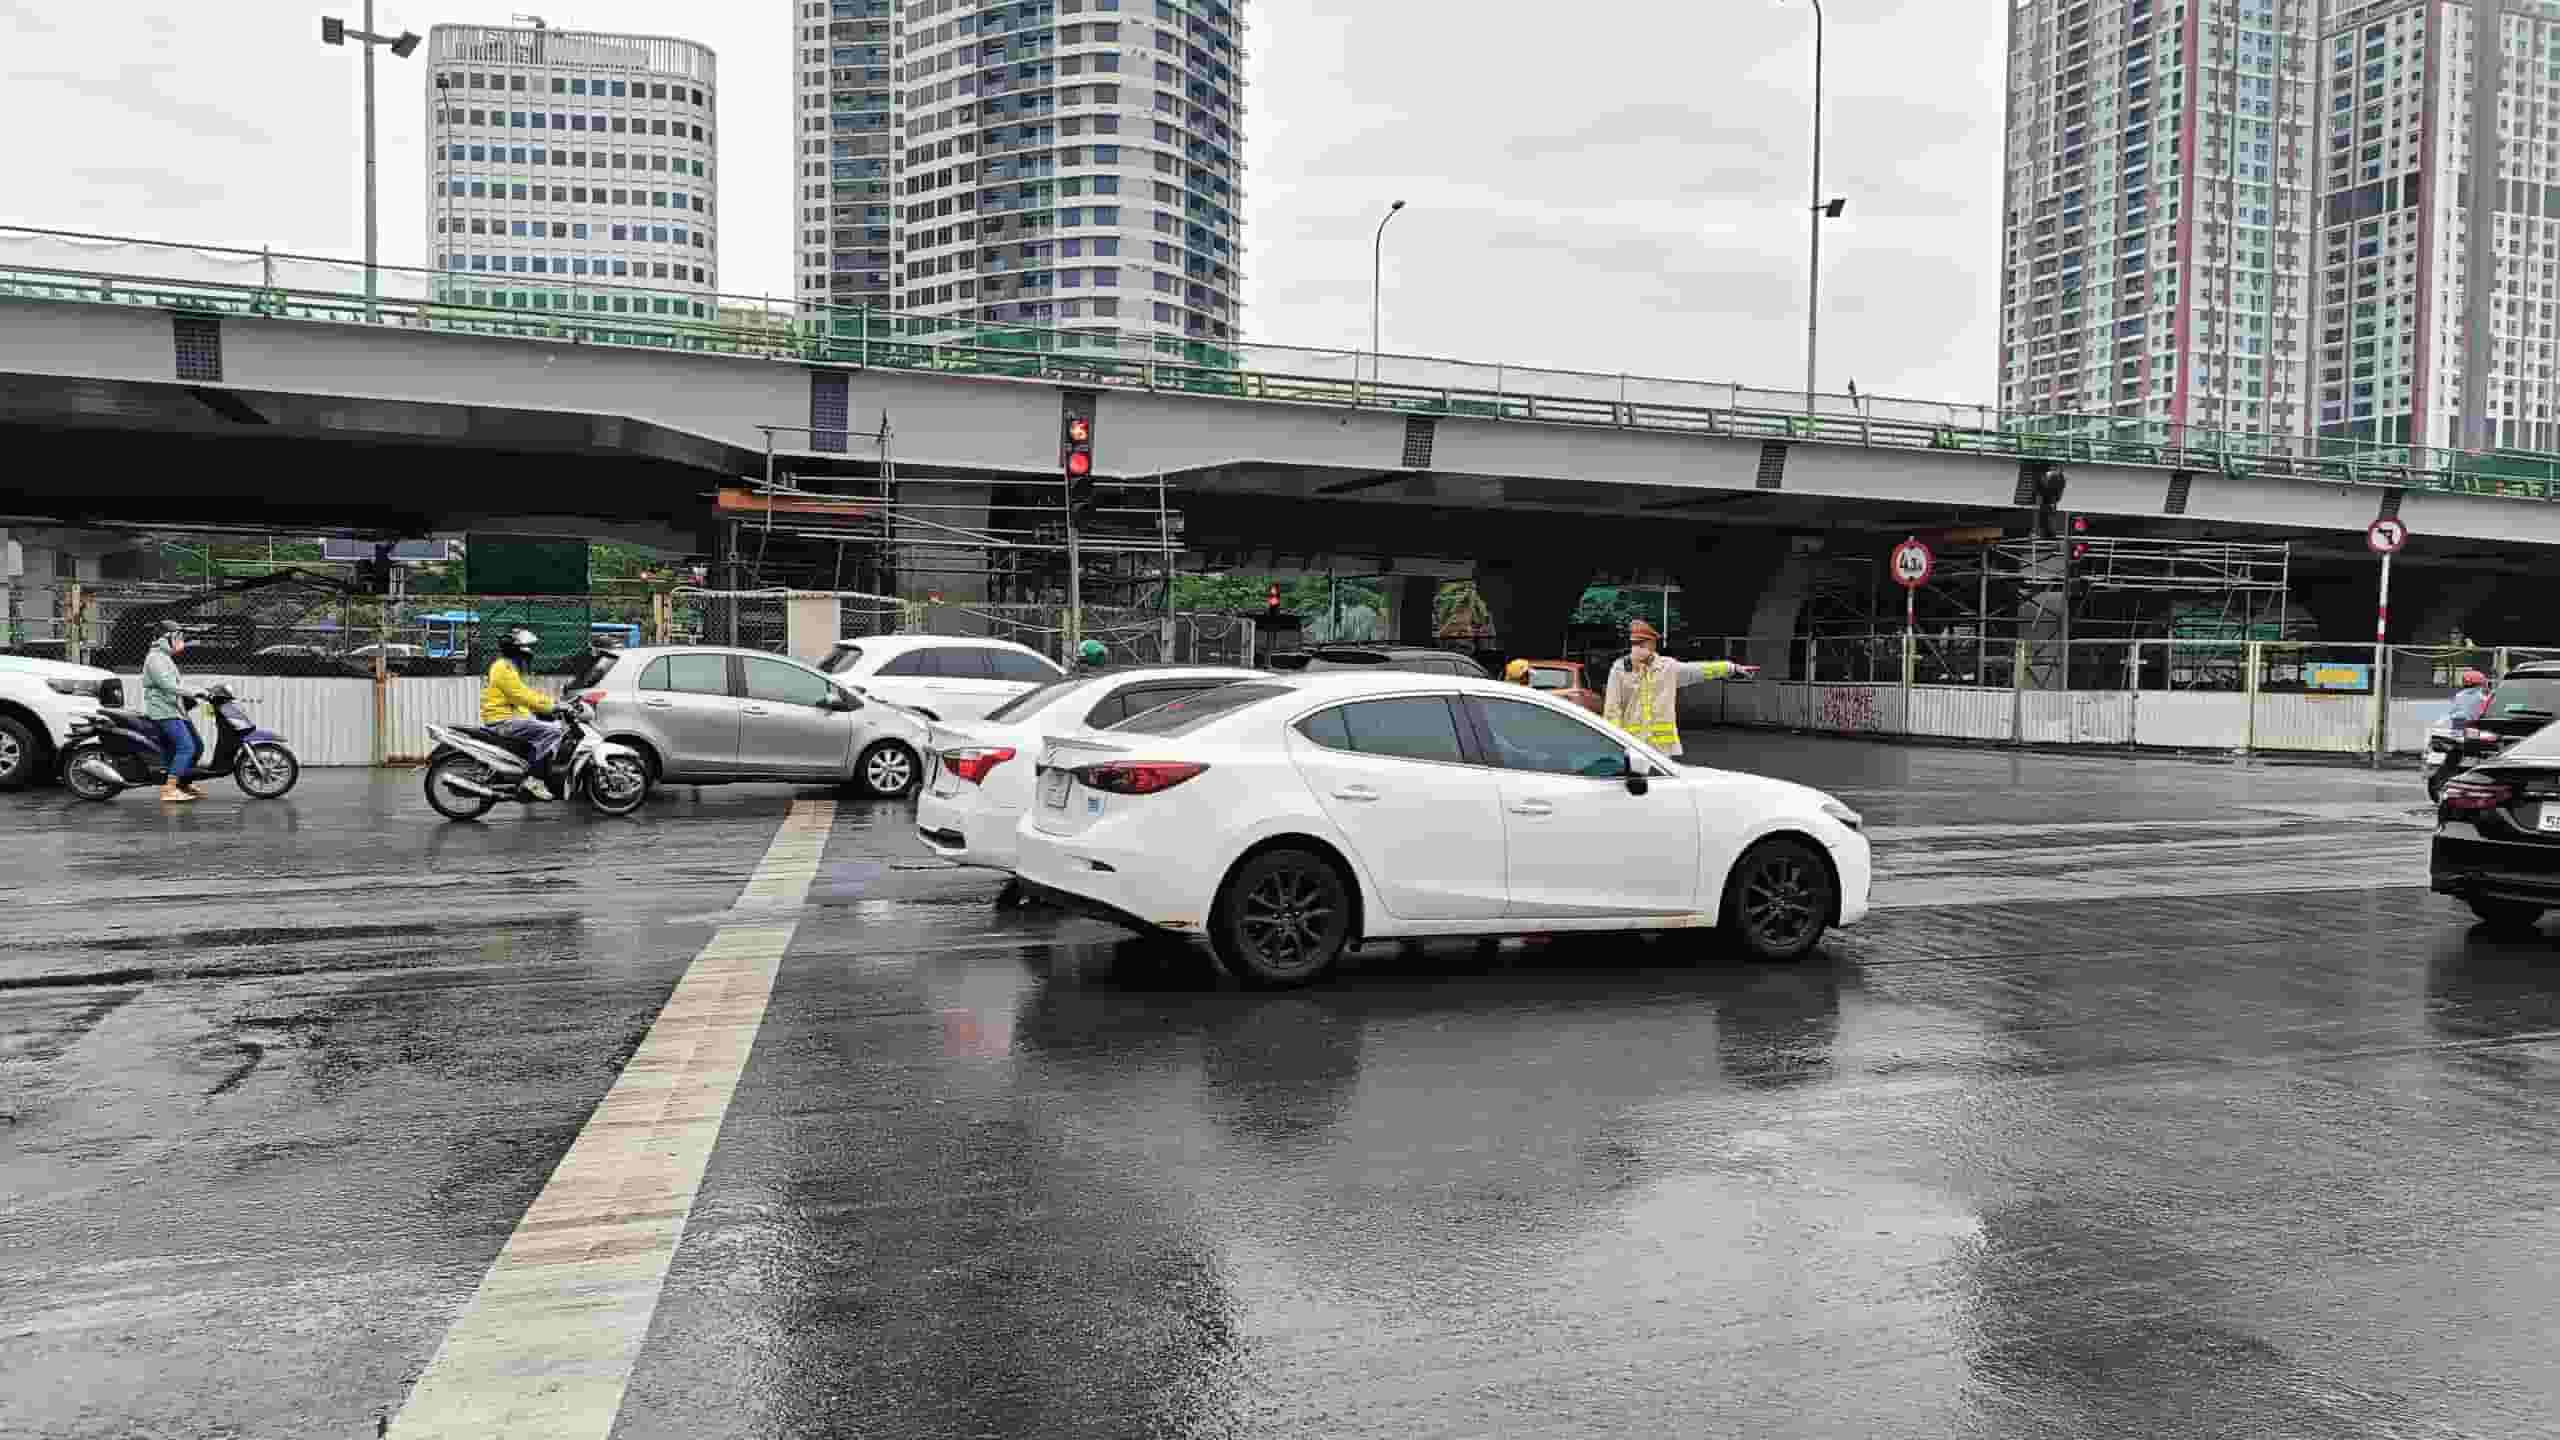 Khu vực nút giao đường Phạm Văn Đồng - Xuân Thủy cũng trong tình trạng ùn tắc kéo dài. Lực lượng cảnh sát giao thông phối hợp cùng công nhân công trường điều tiết giao thông, giảm tải ùn tắc.